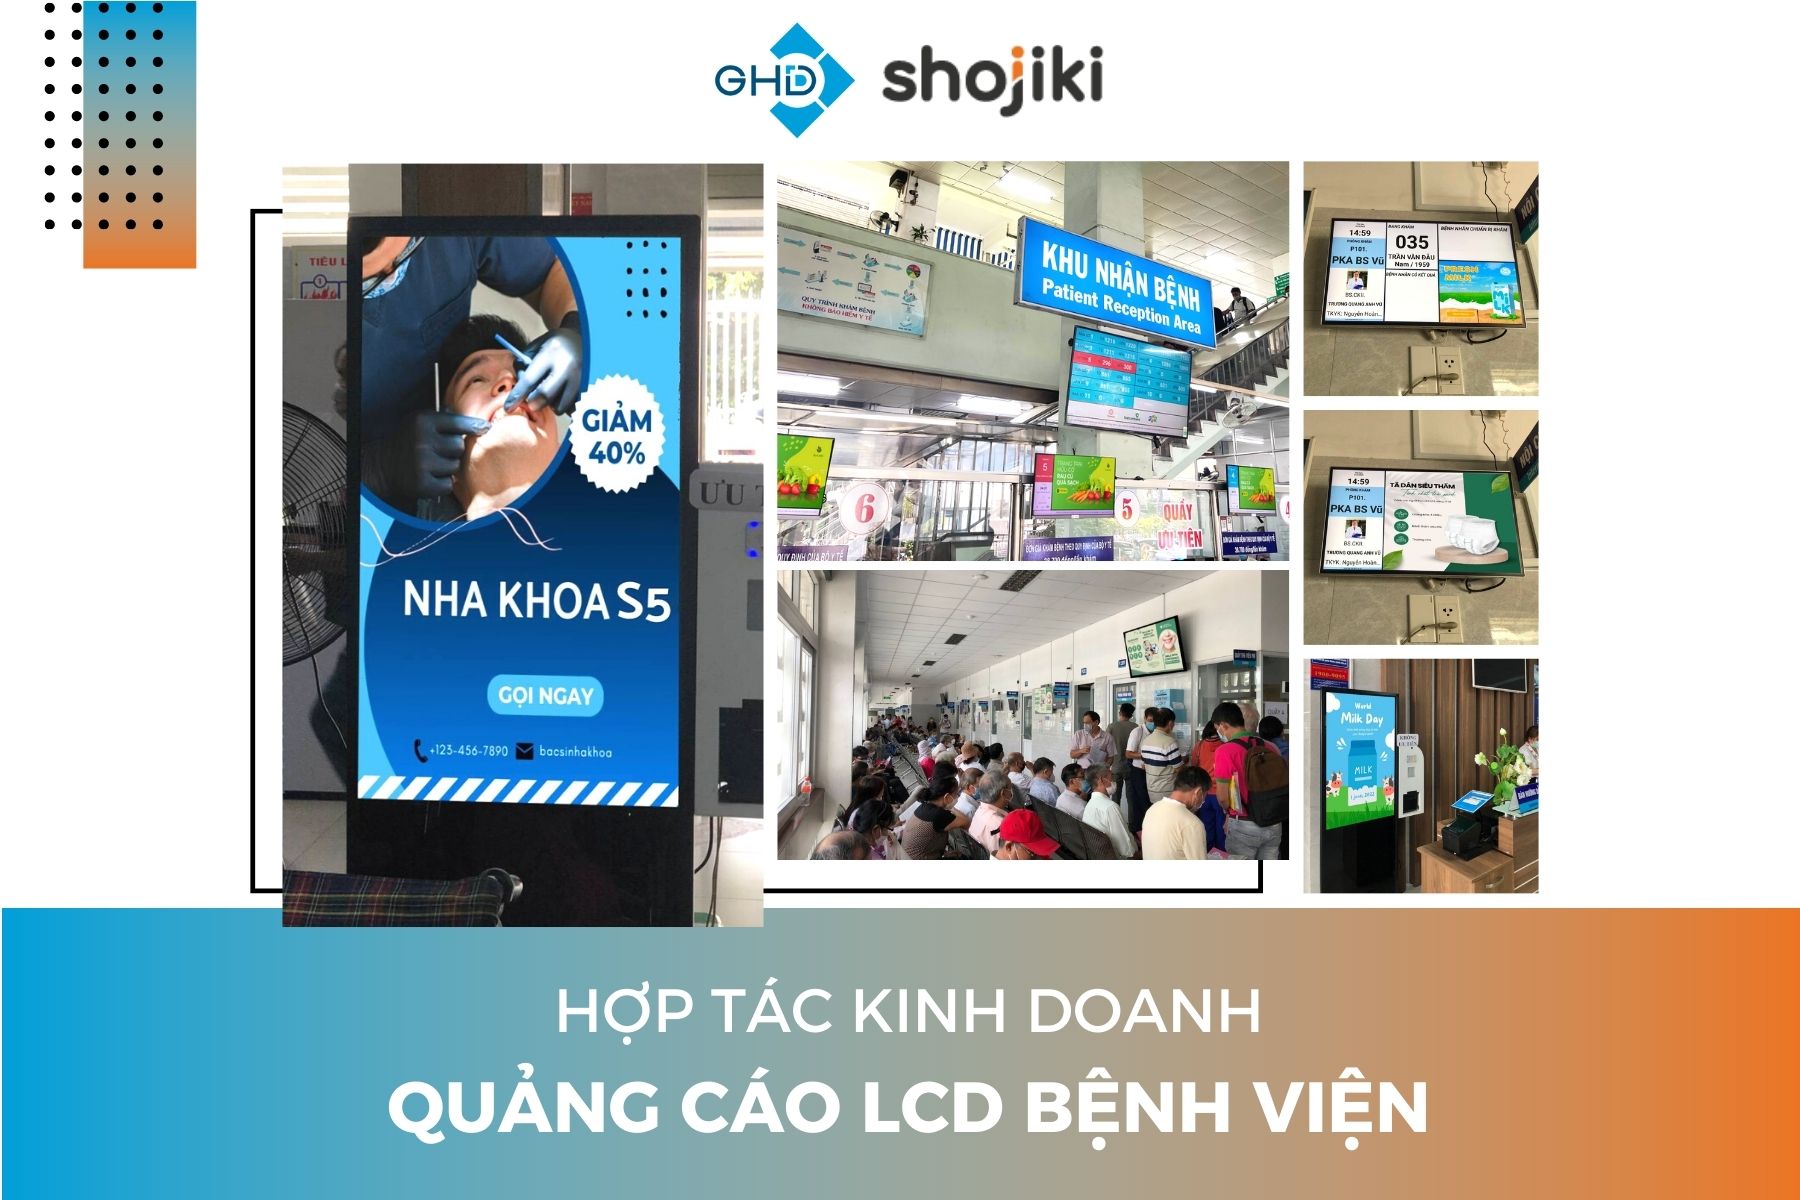 Shojiki ký kết hợp tác với GHD khai thác quảng cáo DOOH tại các bệnh viện lớn